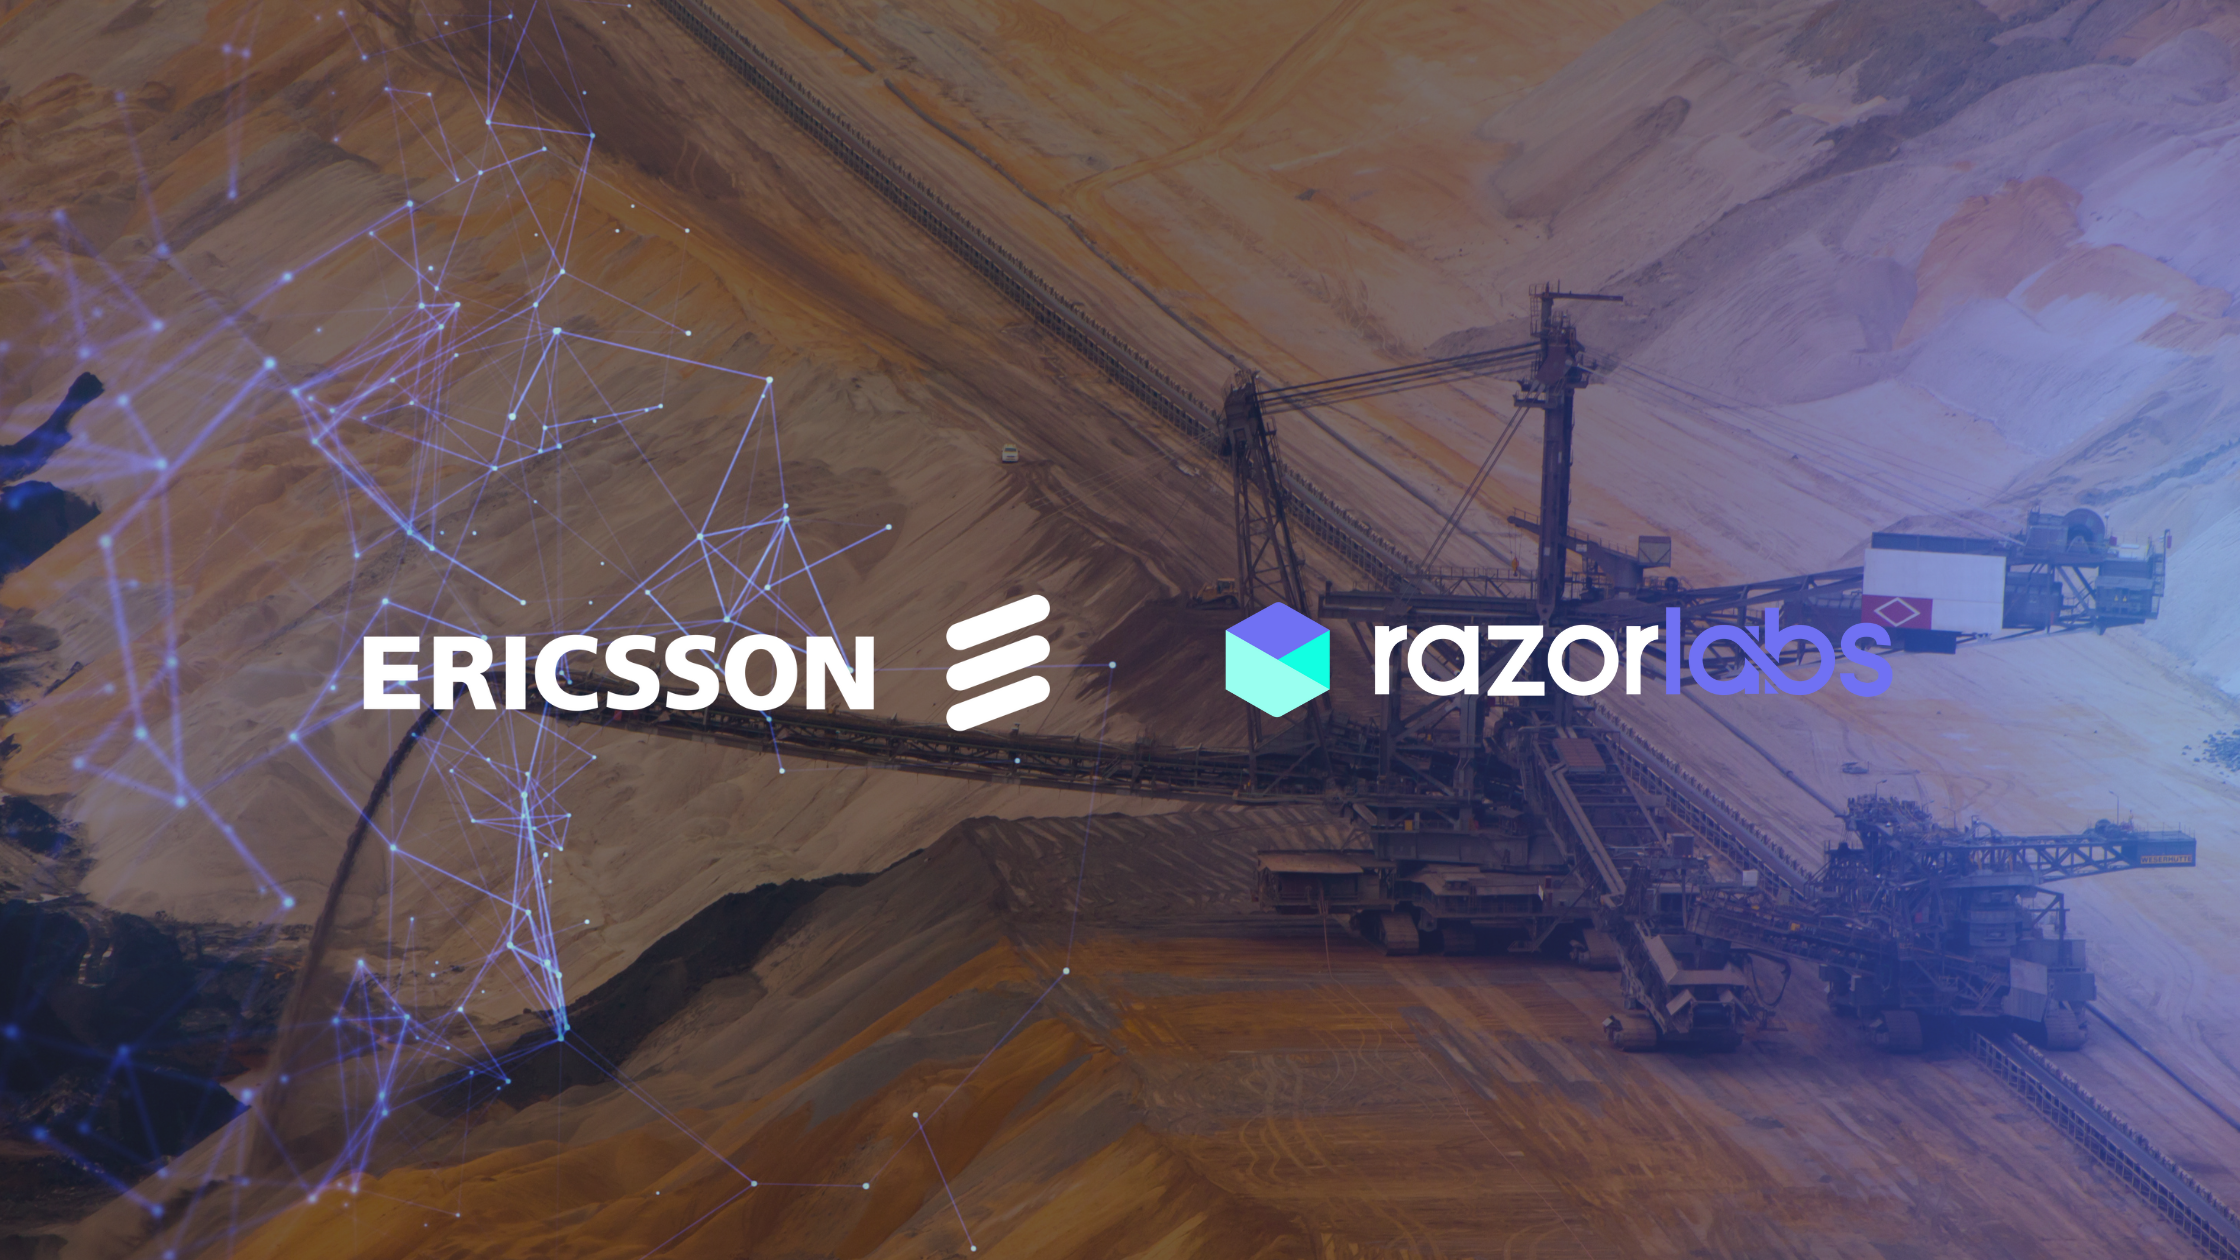 ericsson partners with razor labs